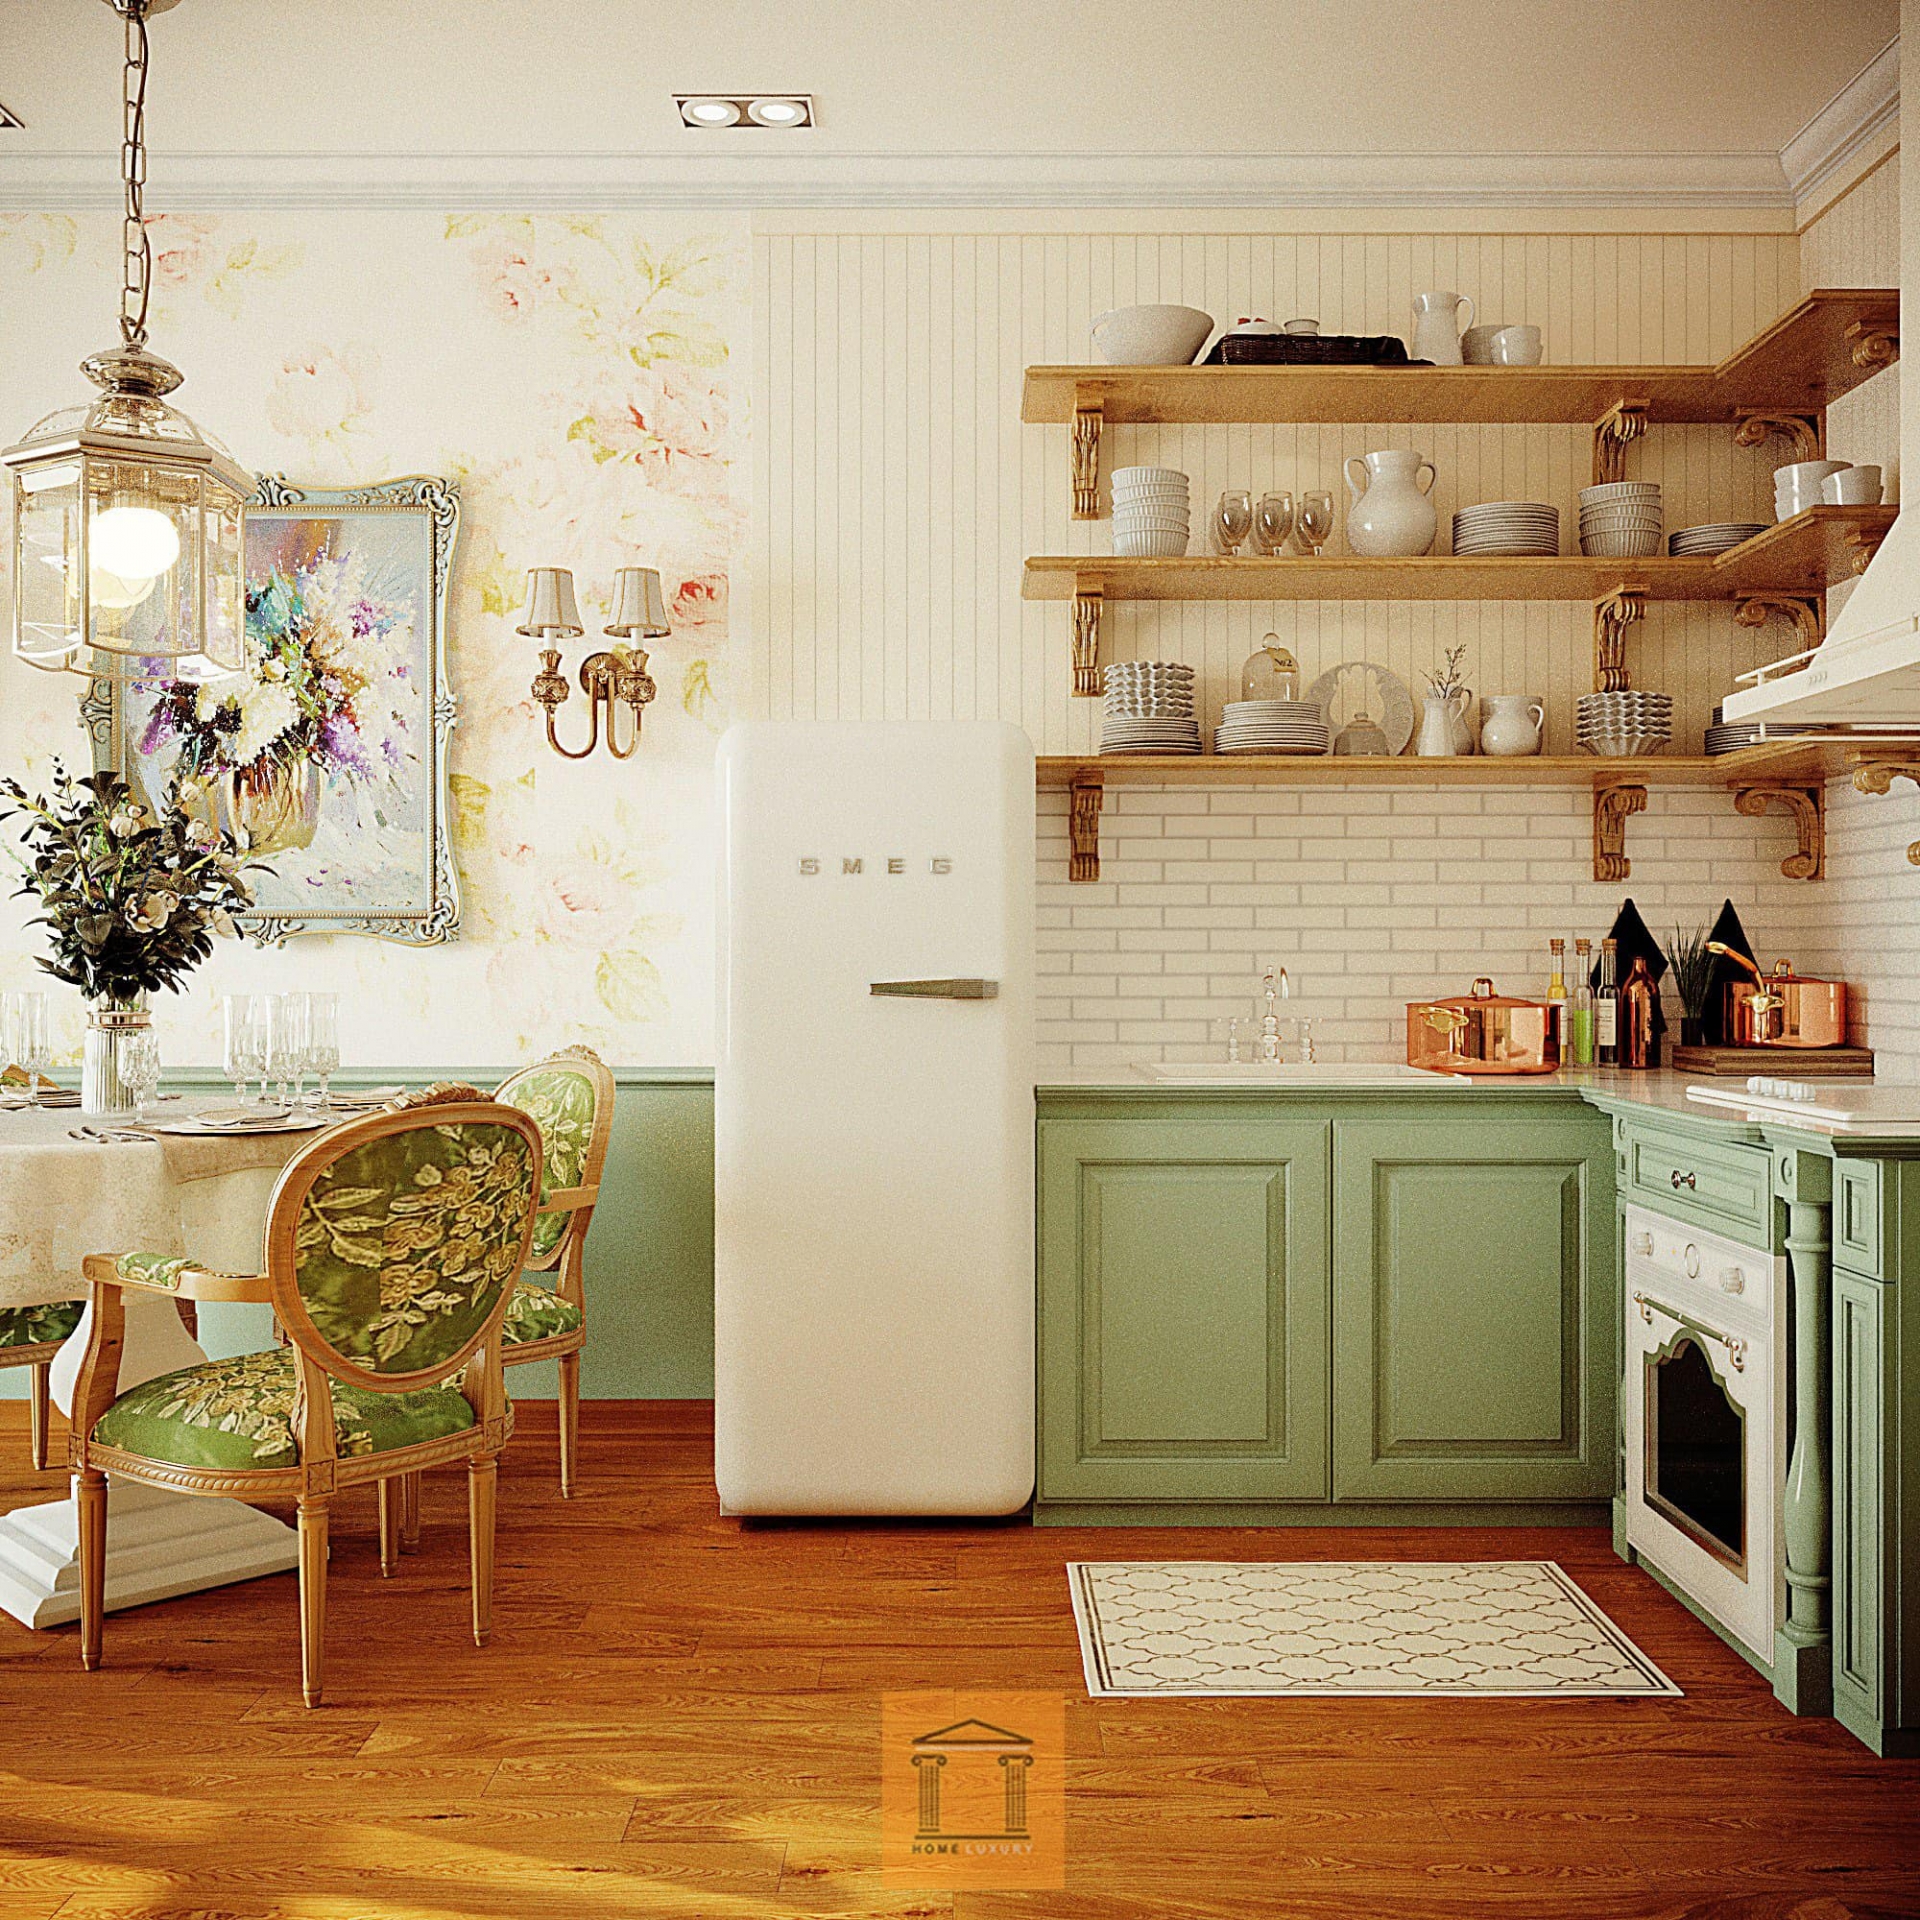 Ngôi nhà được thiết kế theo tone xanh lá cây - trắng mang lại cảm giác dịu dàng, thanh lịch. Hòa Minzy chia sẻ, do chỉ thi thoảng diễn ở Hà Nội nên cô đầu tư bàn ăn và bếp nhỏ xinh, phù hợp với diện tích căn nhà. 